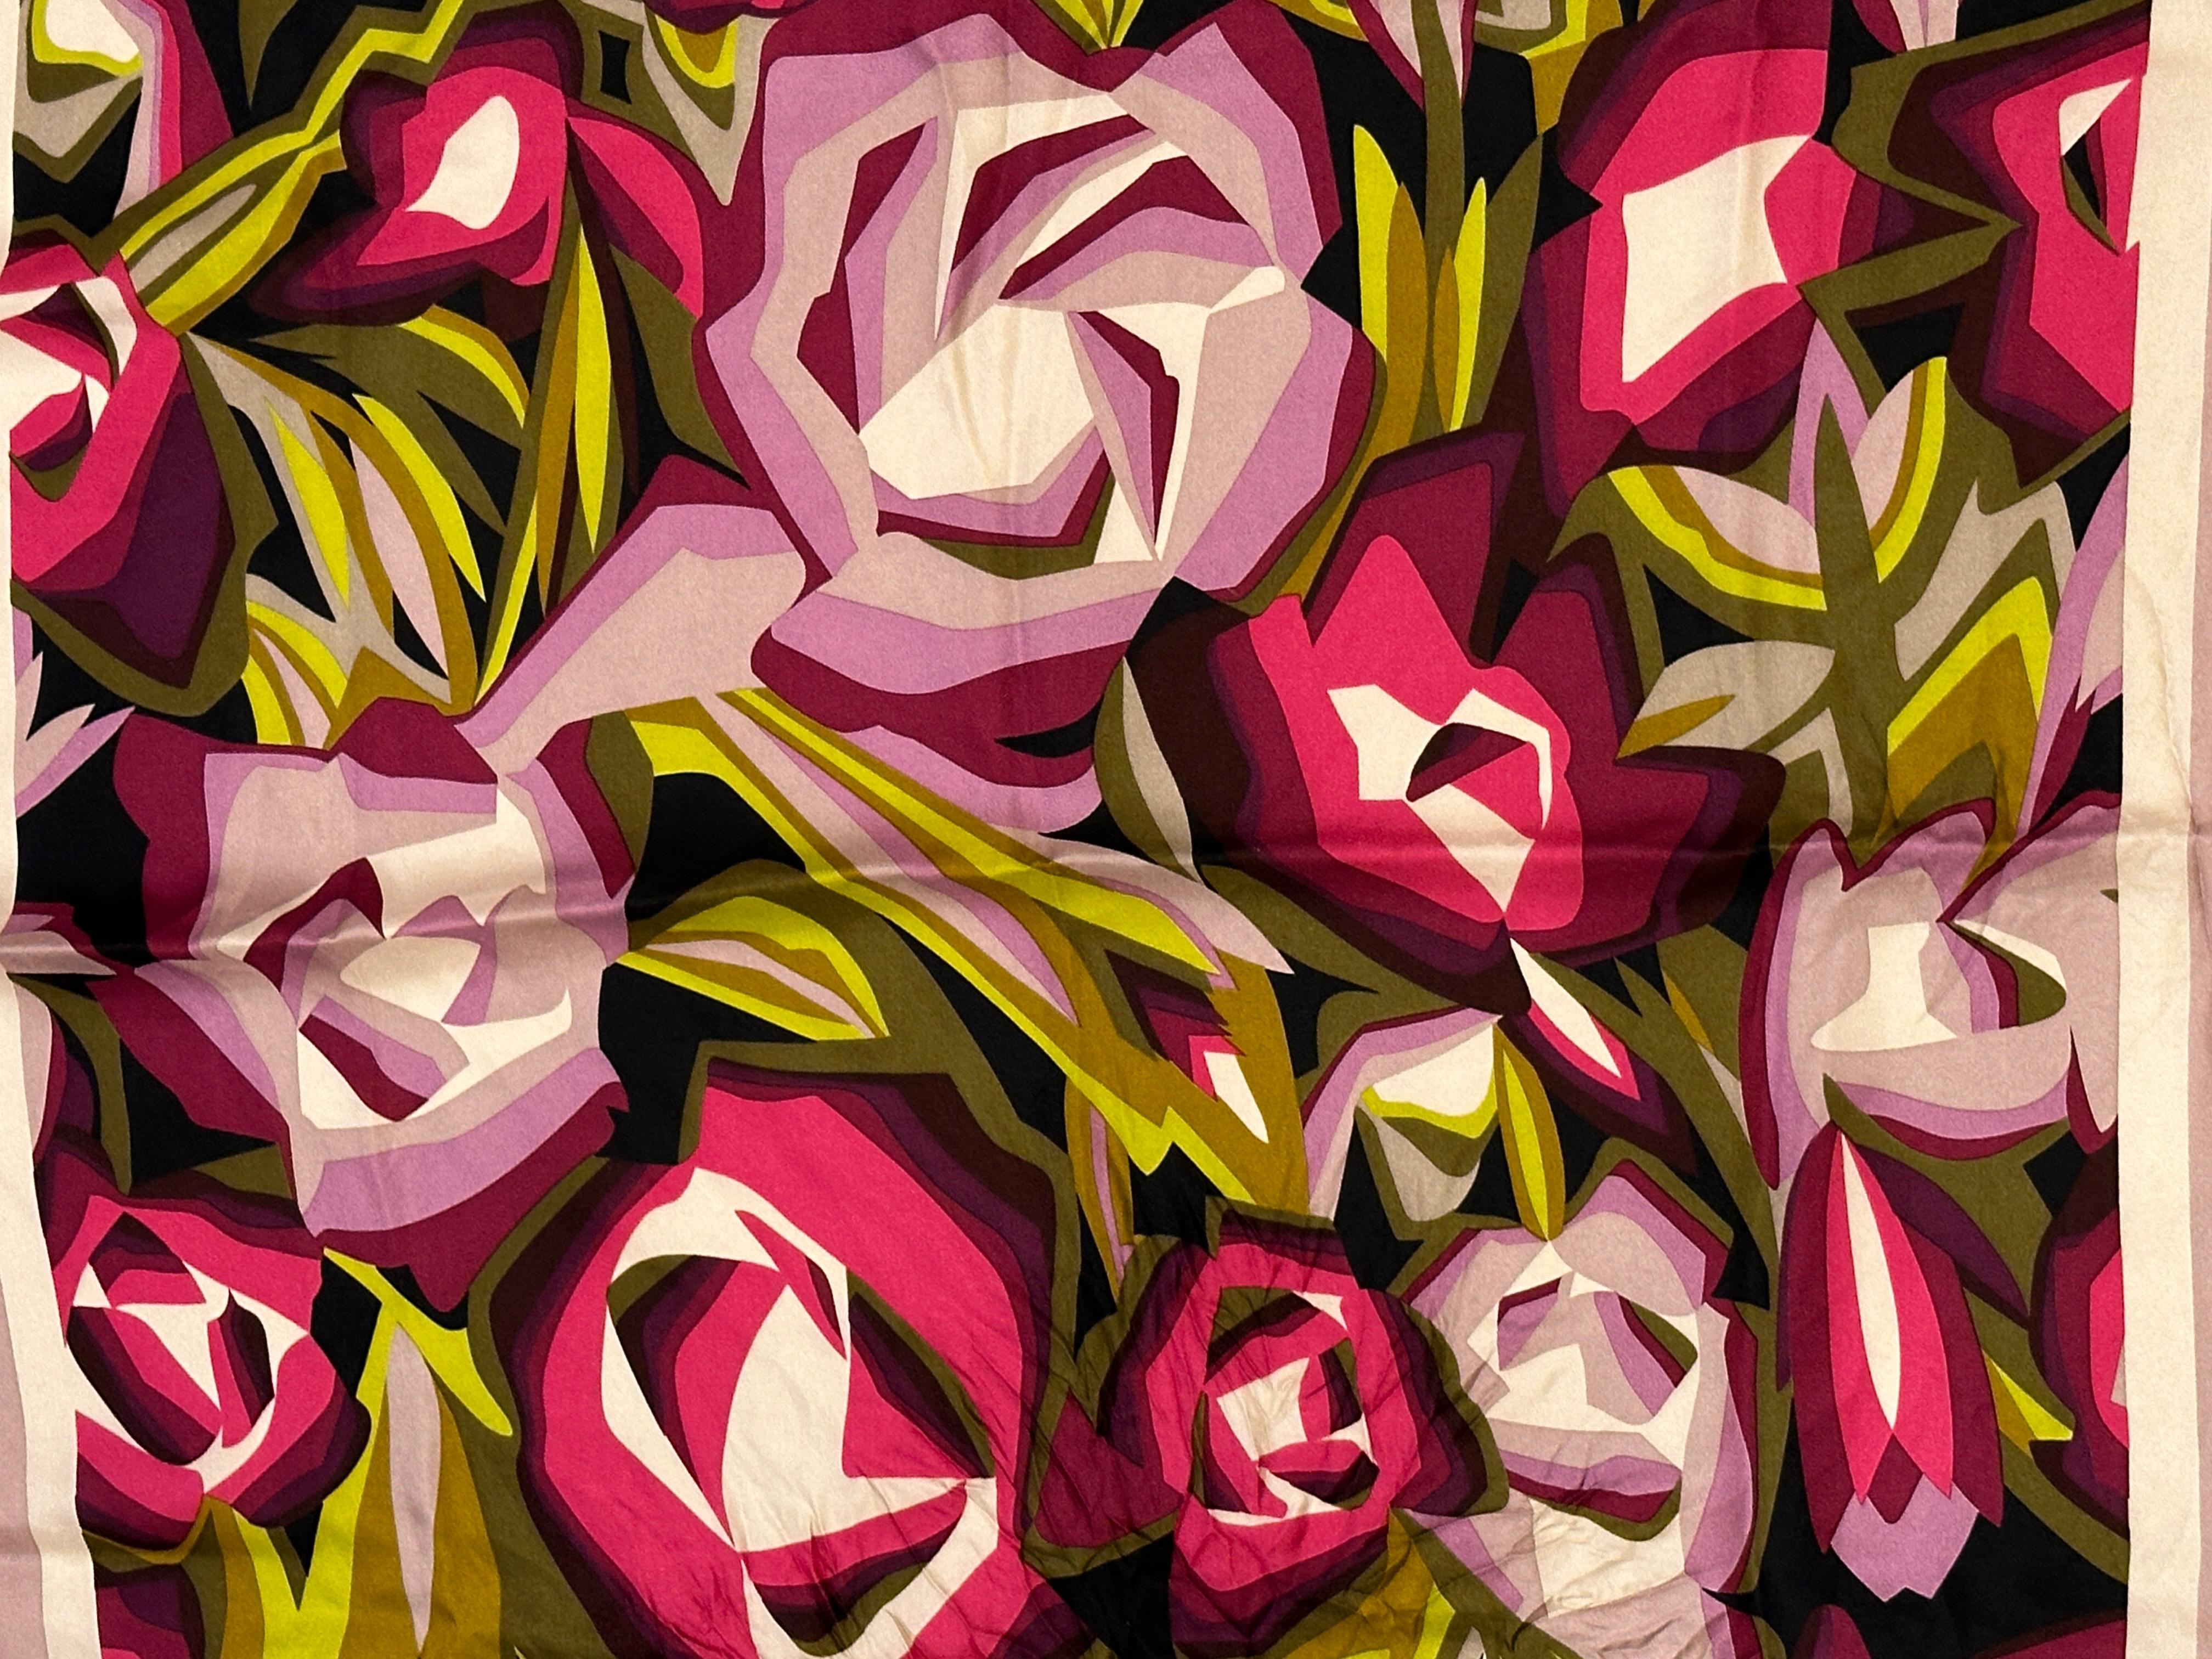 Missoni wundervoller Multicolor-Schal aus fuchsiafarbener, lavendelfarbener und grüner Blumenseide, akzentuiert mit tieffuchsiafarbenen Borten und gerollten Kanten. Der Schal misst 27 1/2 Zoll mal 28 Zoll. Hergestellt in Italien.